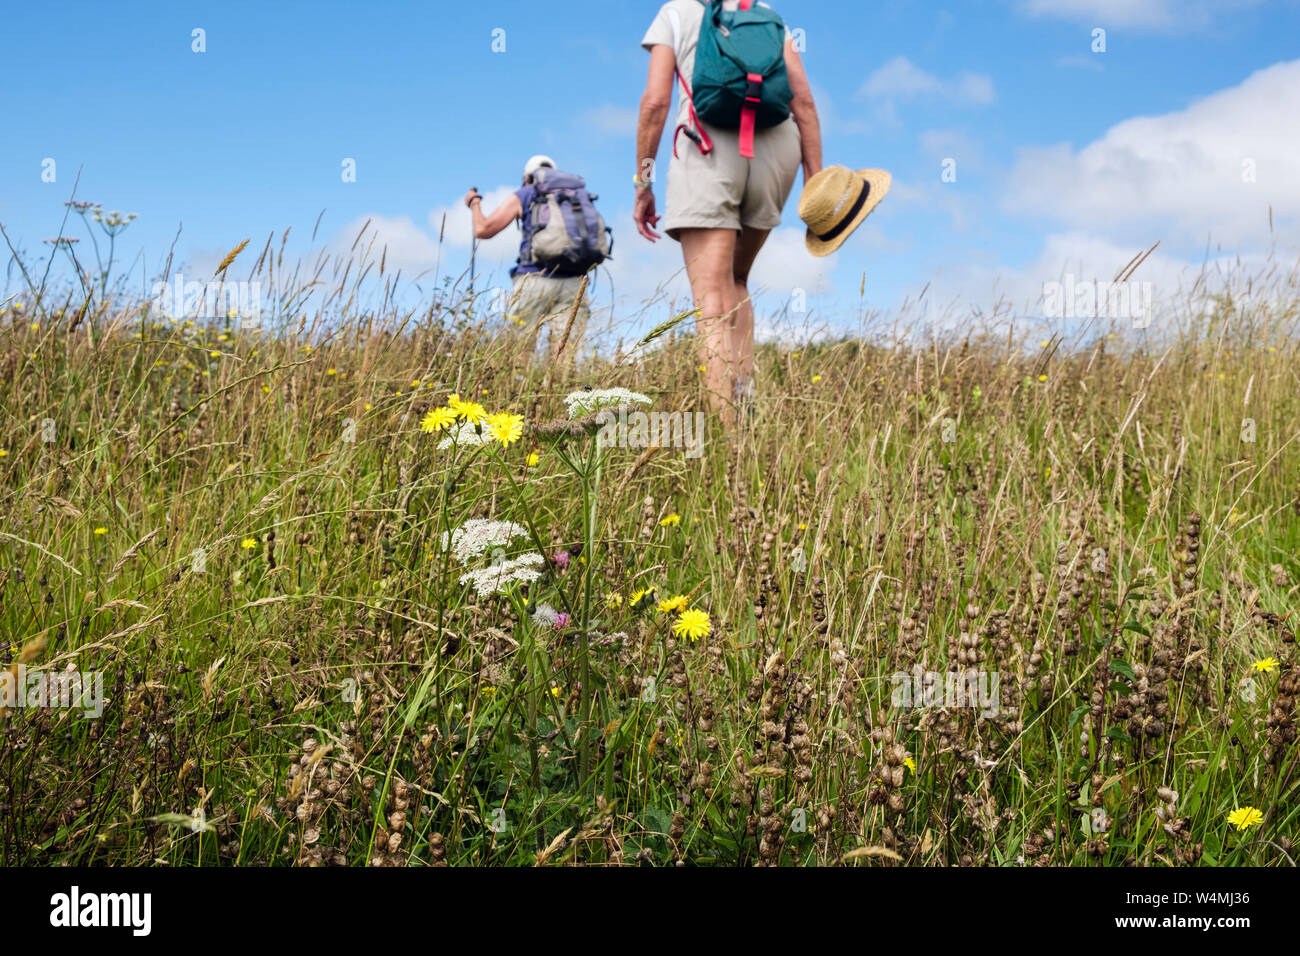 Gli escursionisti escursionismo su un paese a piedi attraverso un prato di fieno campo di sonaglio giallo e fiori di campo in estate. Benllech Isola di Anglesey Wales UK Gran Bretagna Foto Stock